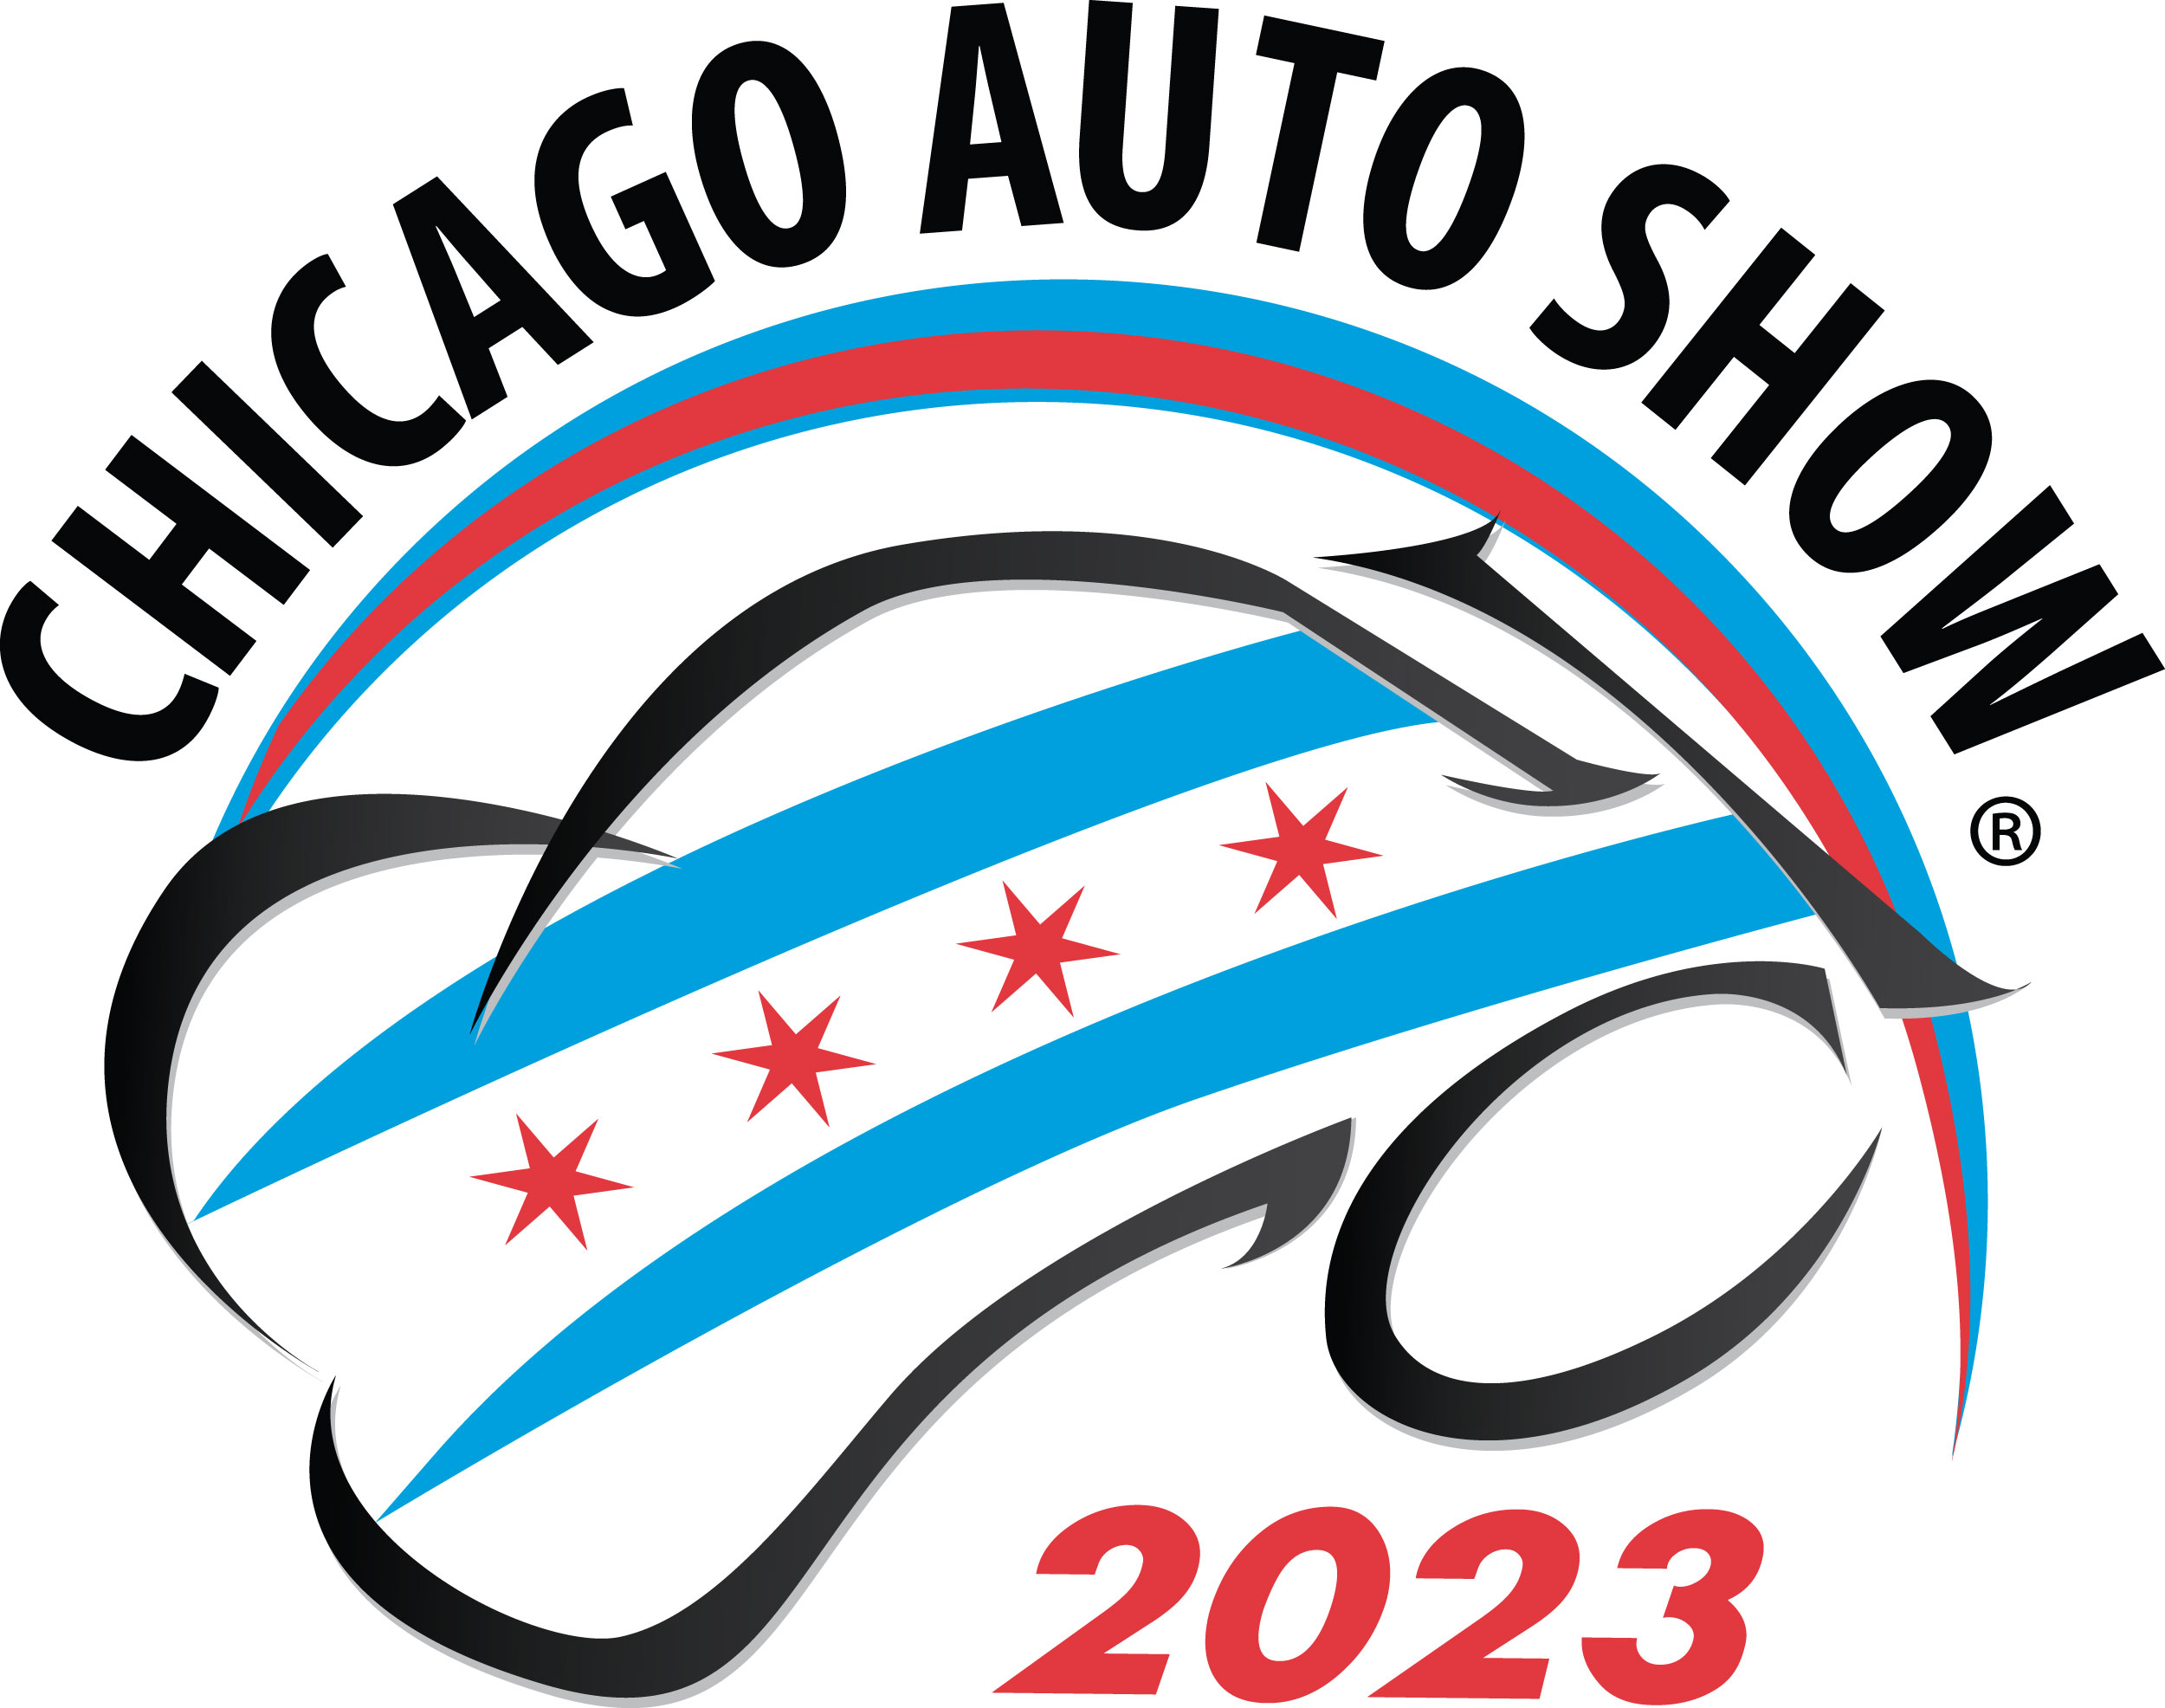 Chicago Auto Show 2023 Coverage